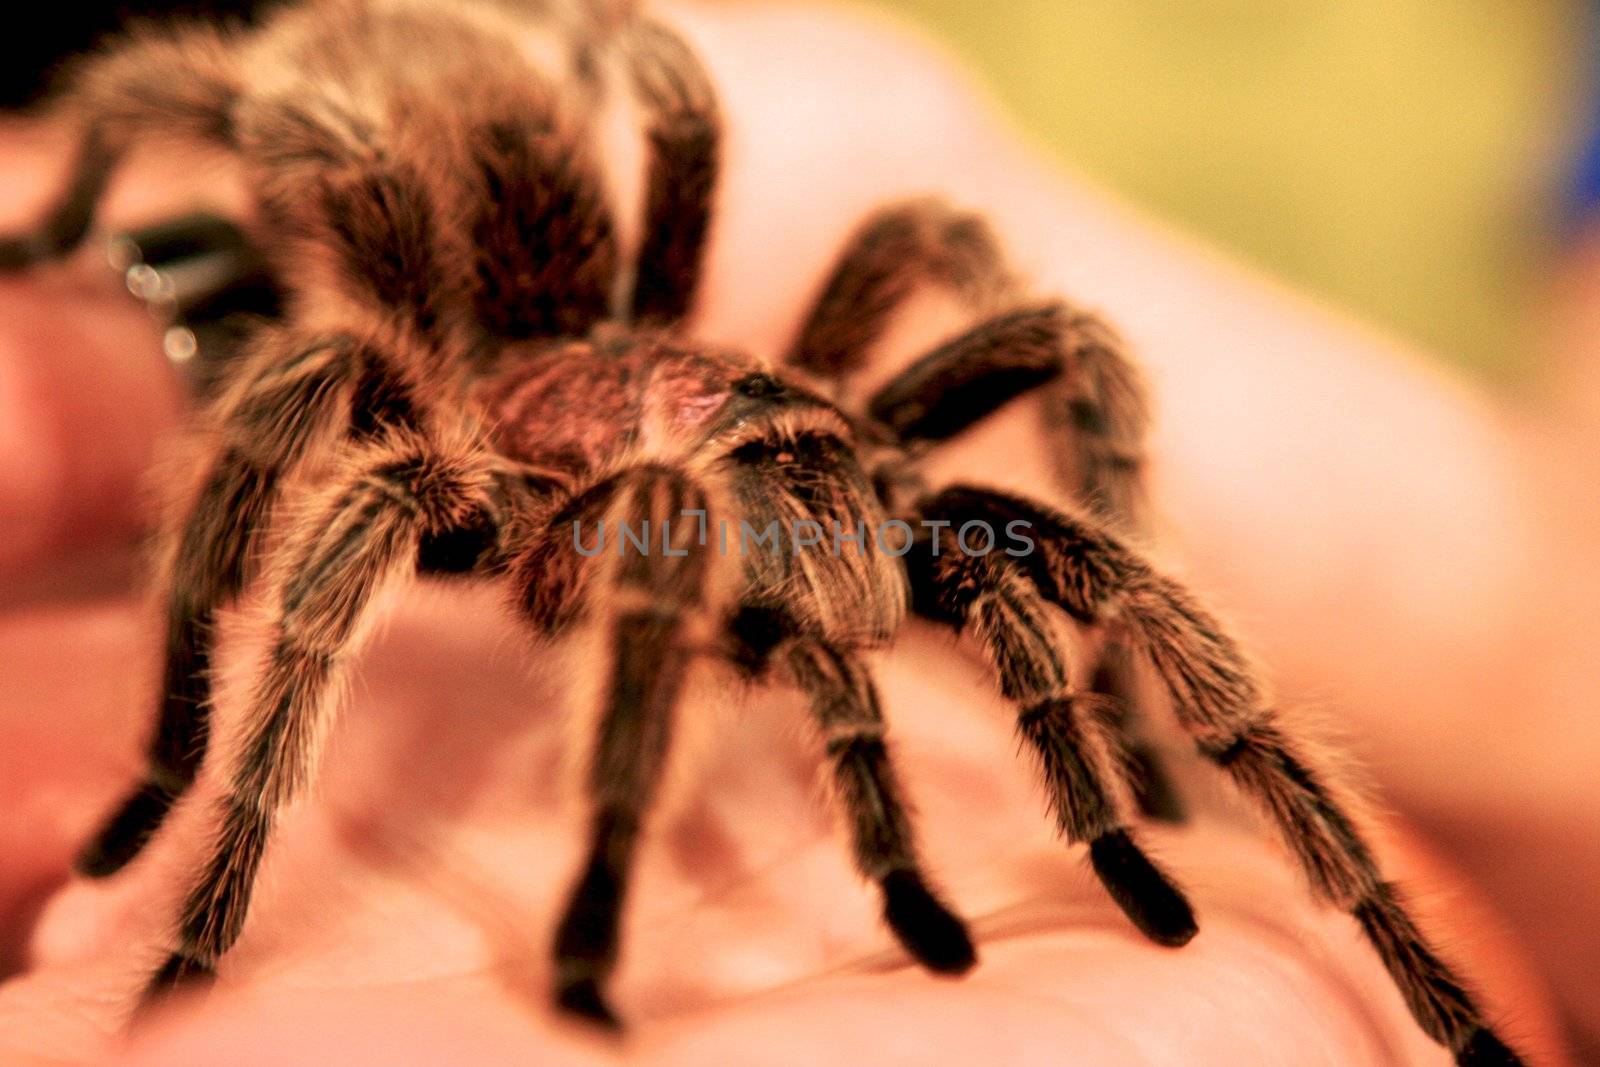 holding brown spider on  hand by Bildehagen